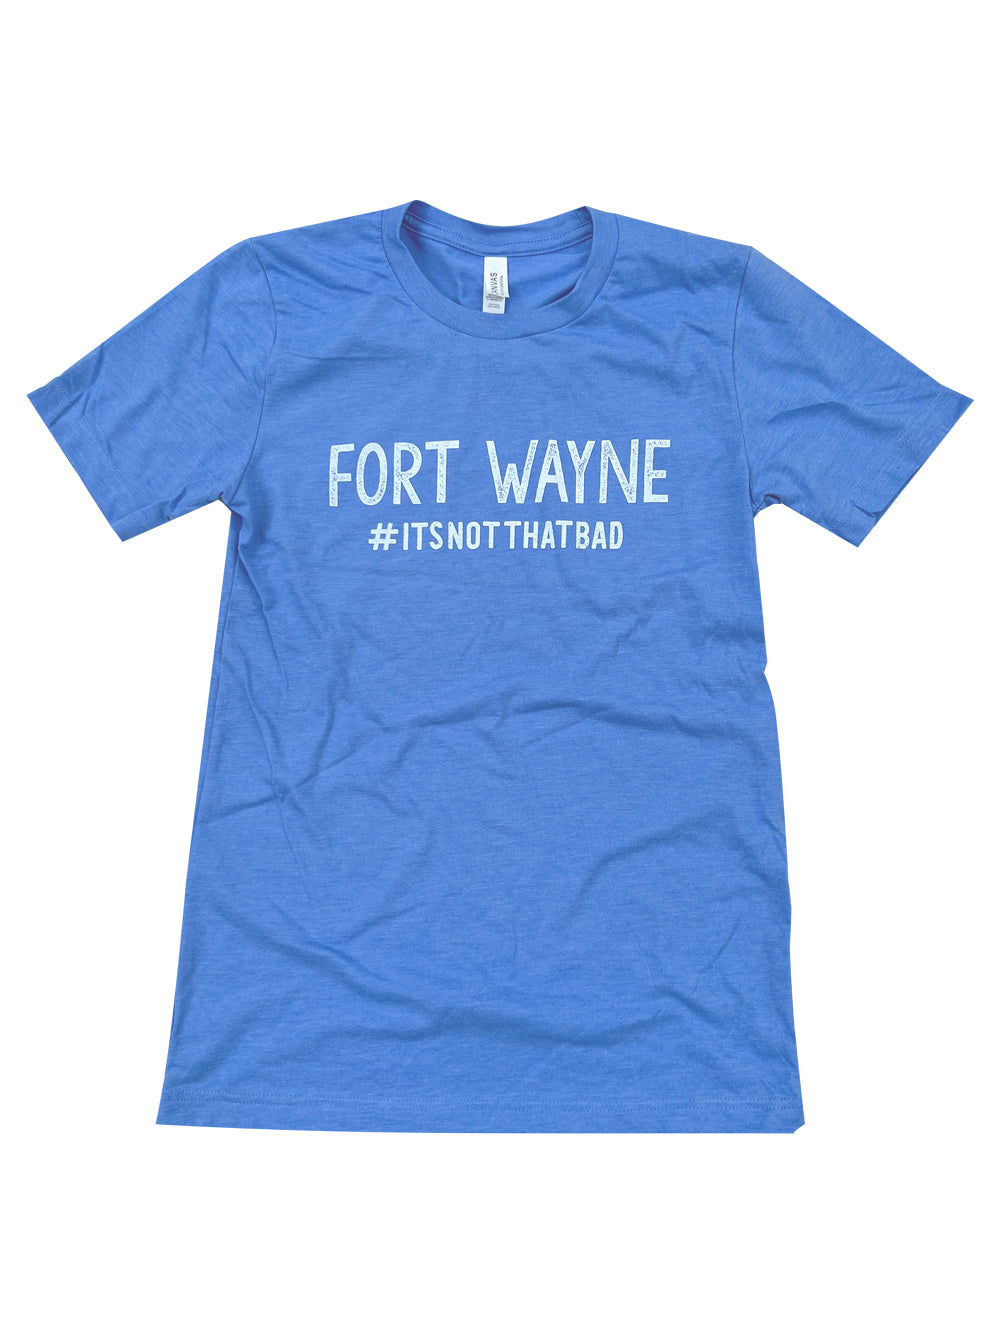 Fort Wayne #itsnotthatbad blue heather t-shirt